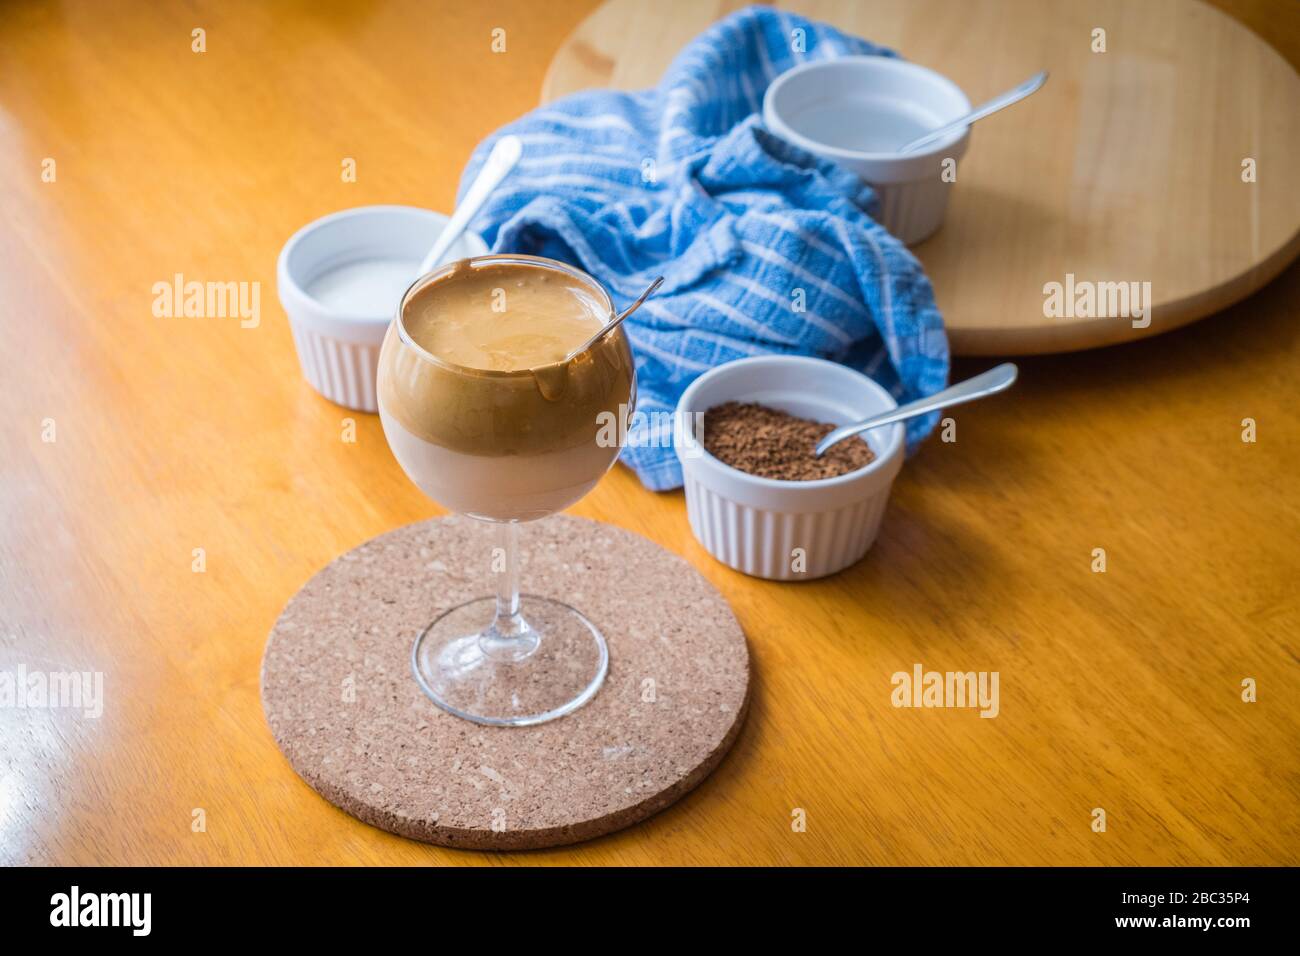 Le café Dalgona, la boisson tendance TikTok, avec des ingrédients - café, sucre et eau. Banque D'Images